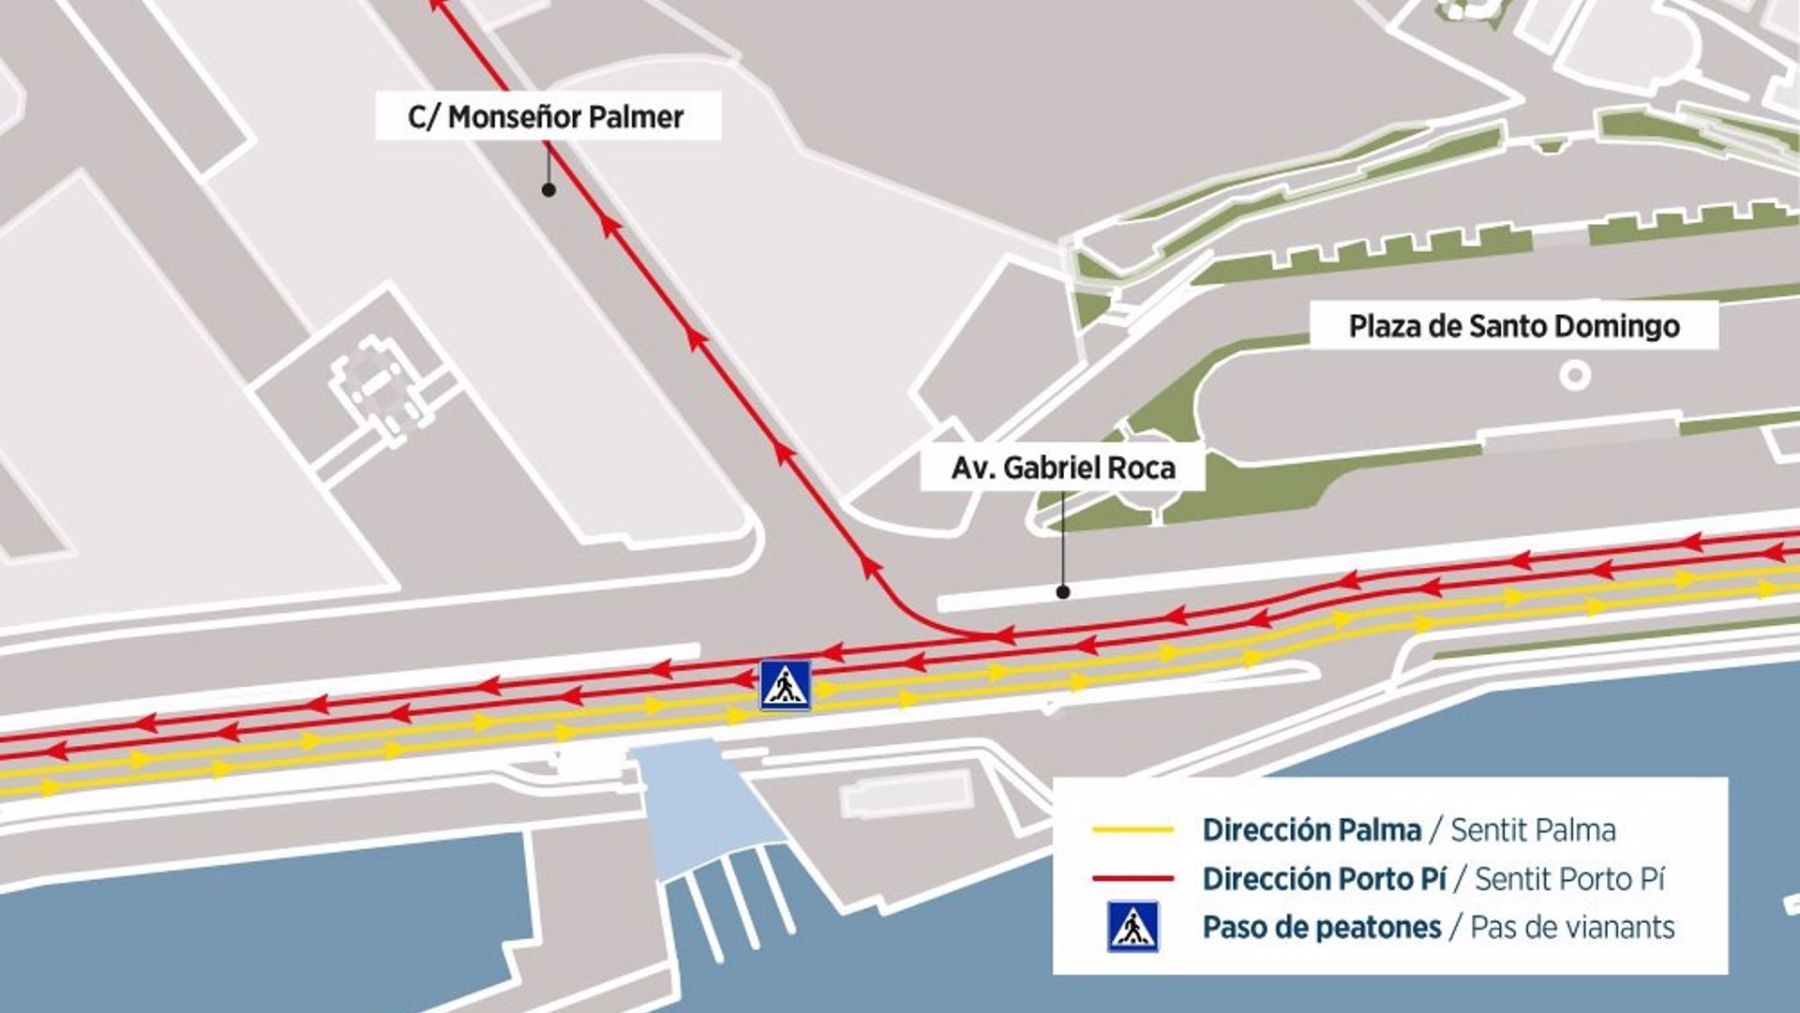 Plano del entorno de calle Monseñor Palmer y avenida Gabriel Roca, en la que se visualiza la reordenación del tráfico con las diferentes actuaciones a realizar